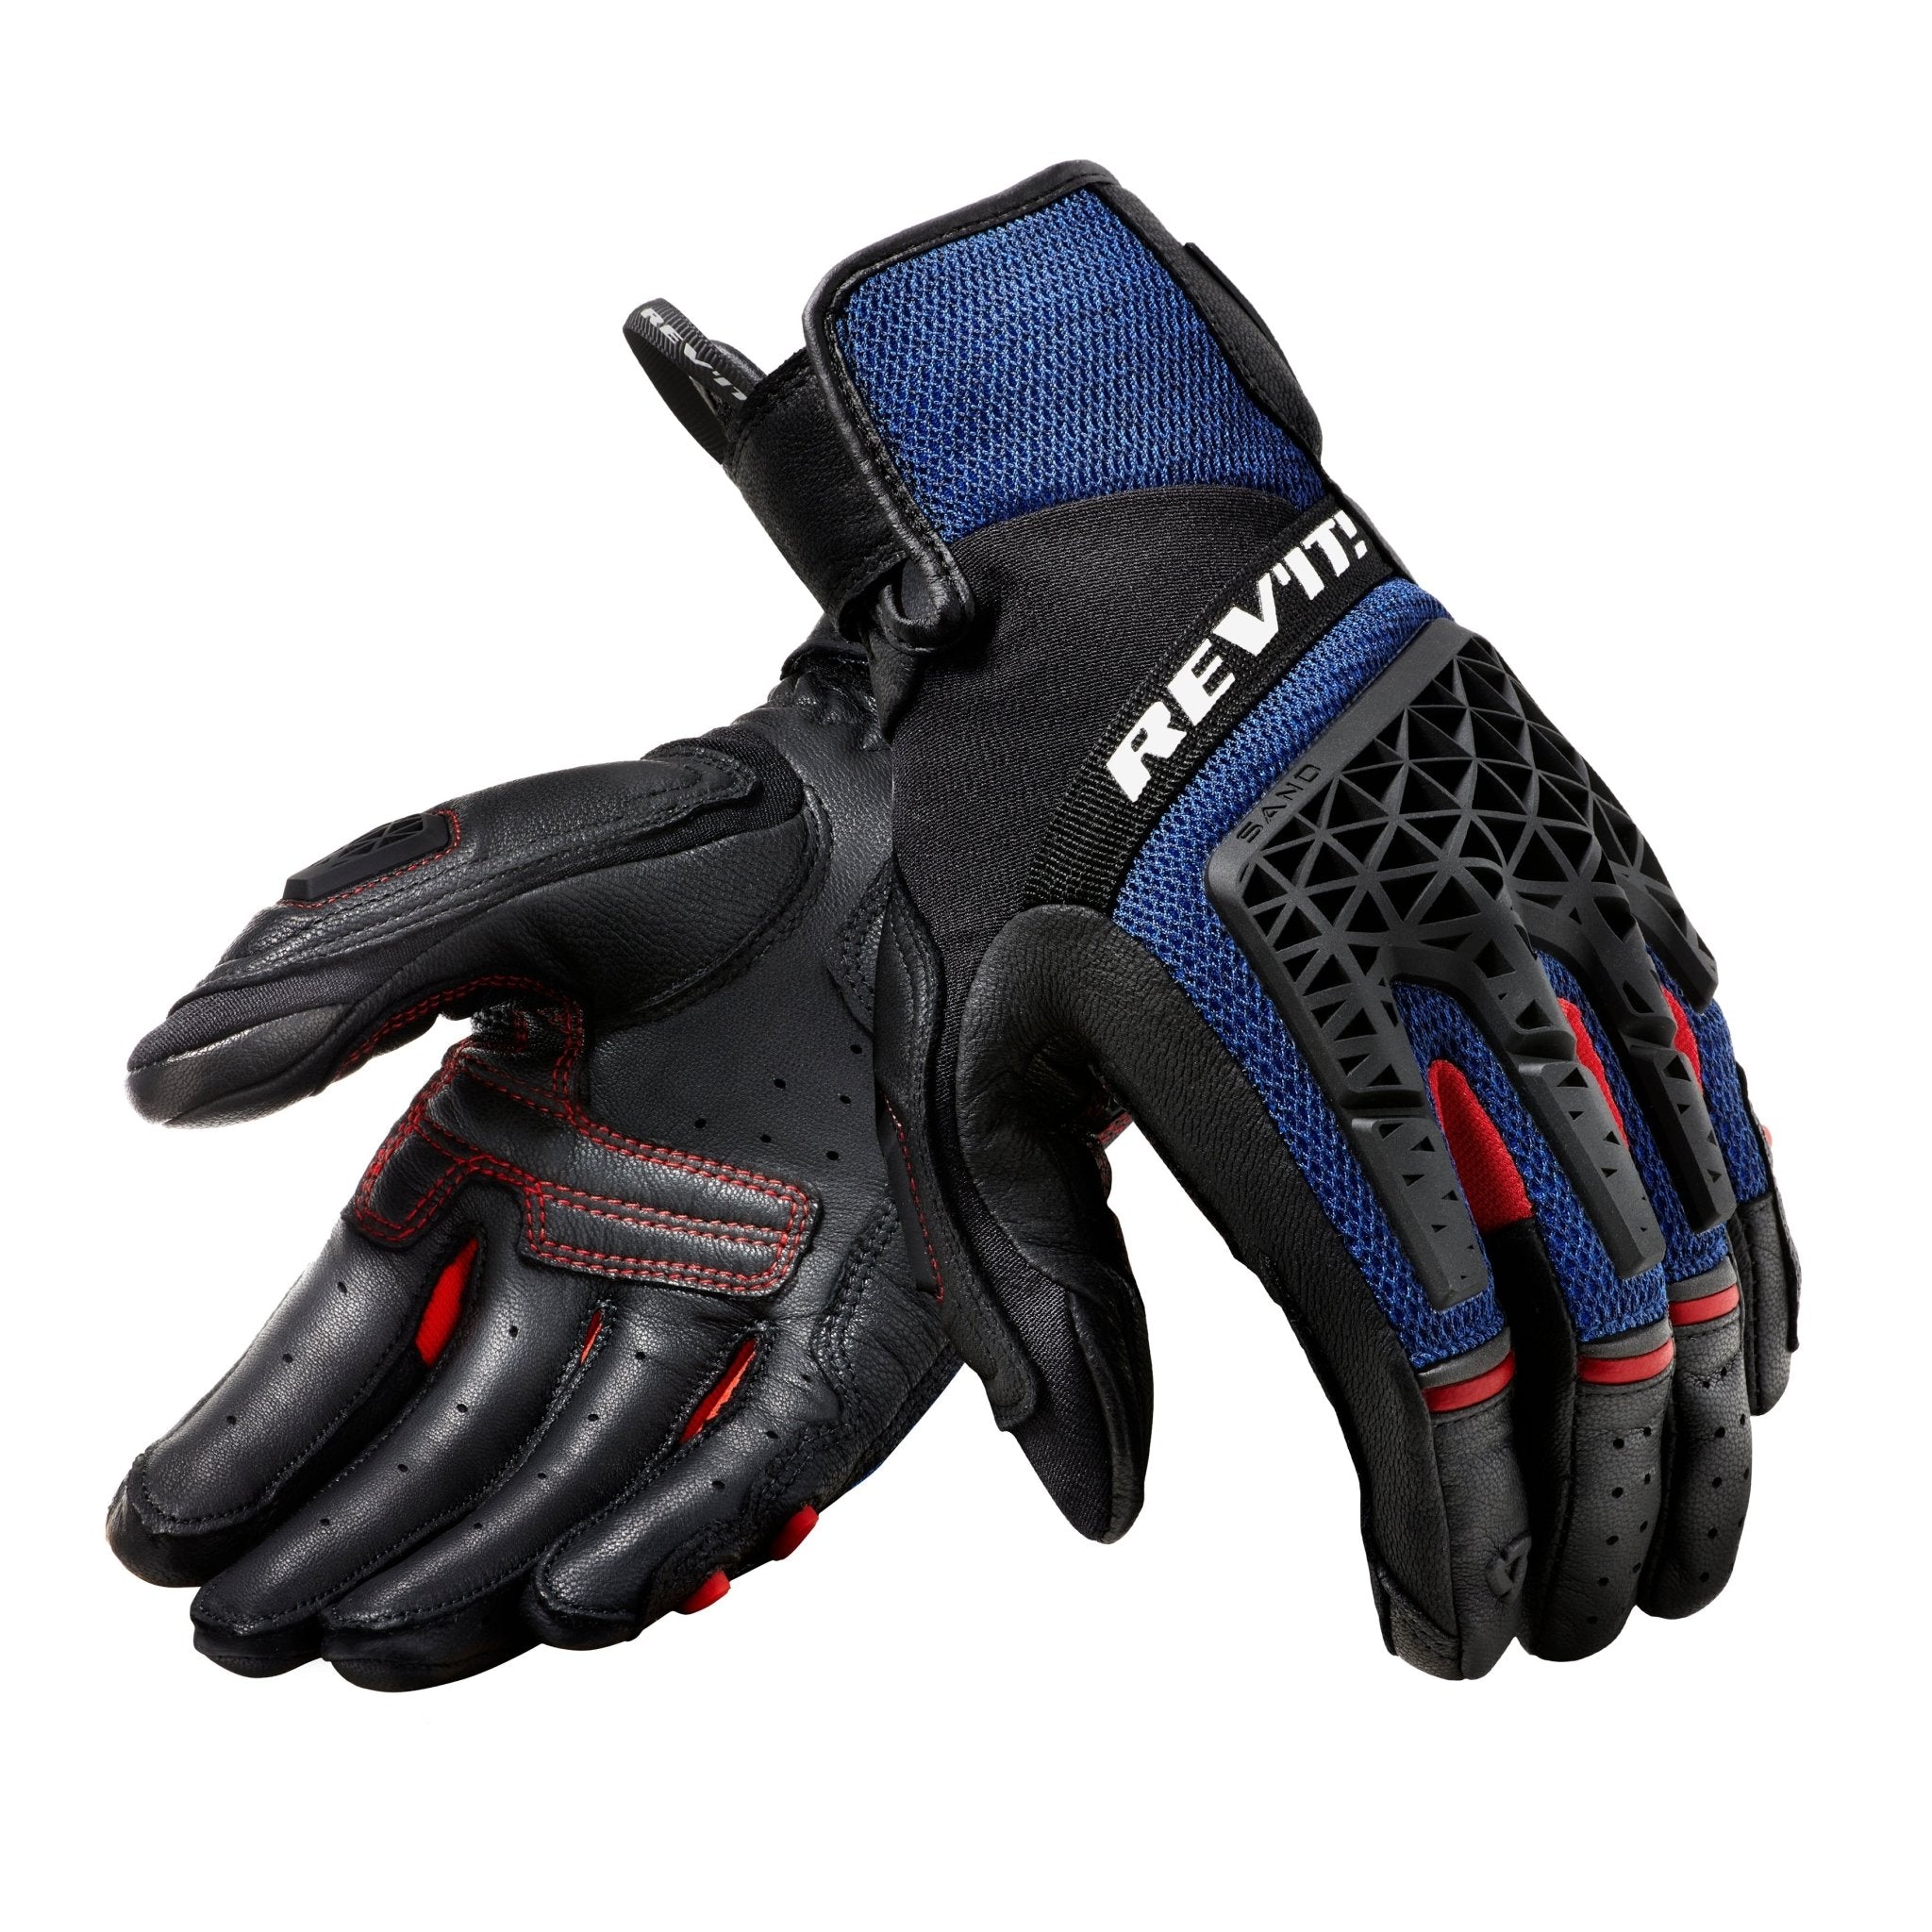 REV'IT! | Sand 4 Men's Gloves - Black/Blue - Gloves - Peak Moto